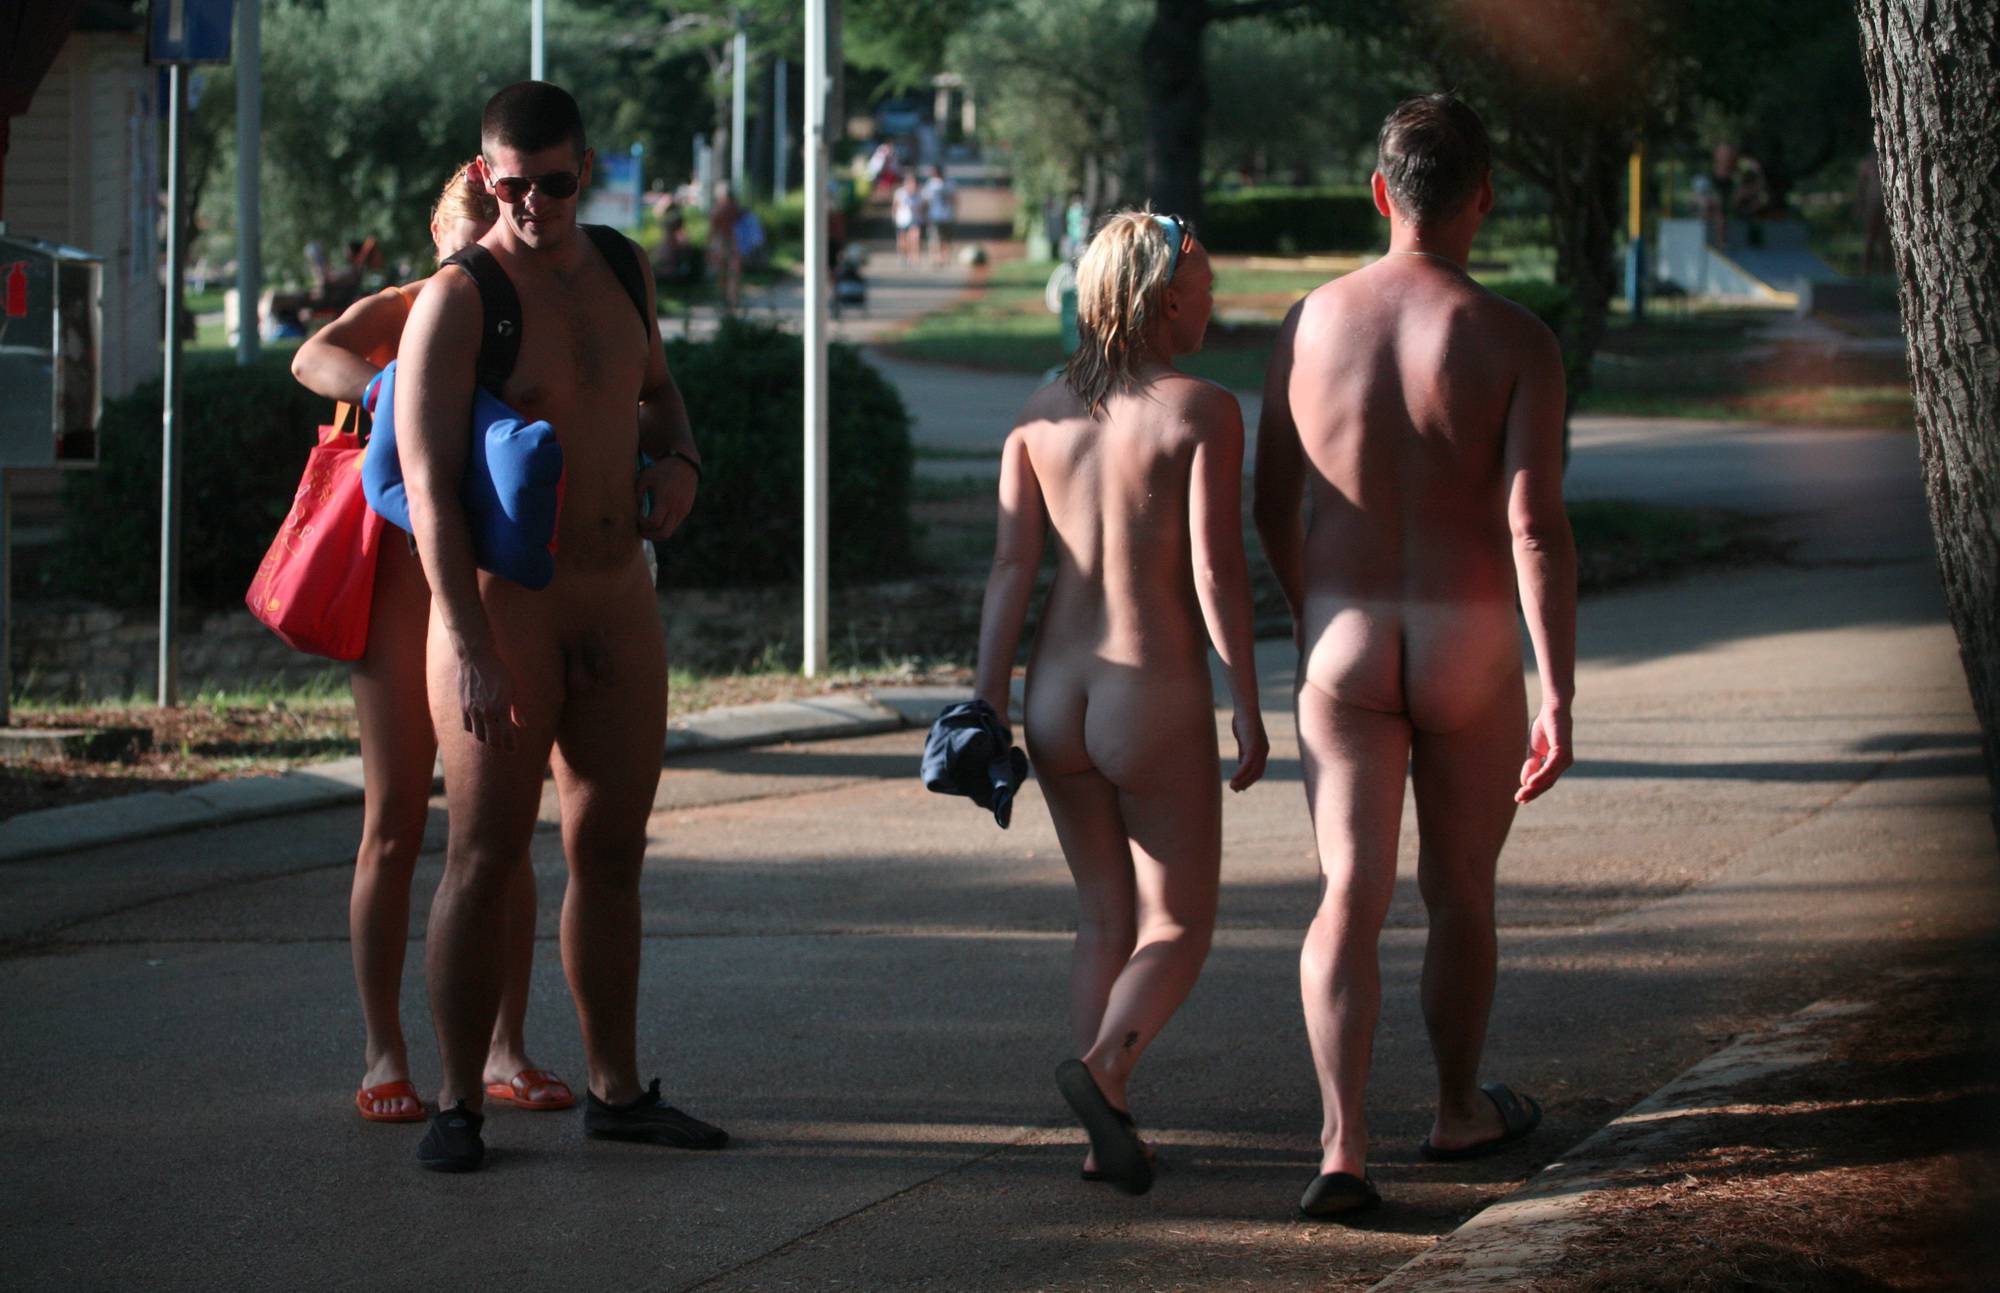 Pure Nudism-Outdoor Sidewalk Series - 3